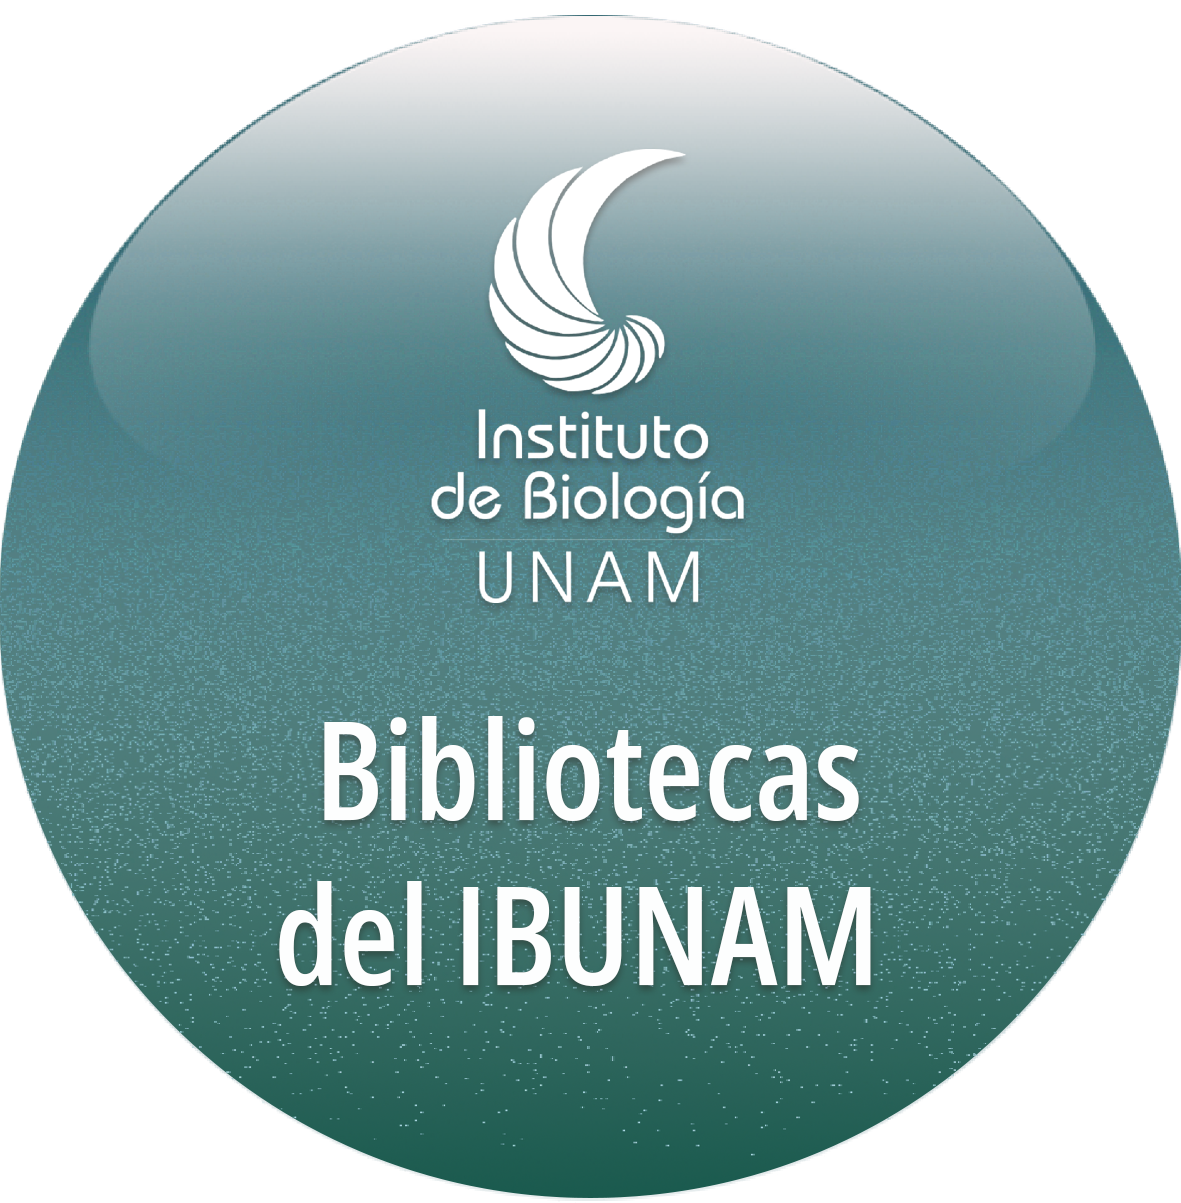 Bibliotecas del IBUNAM - Instituto de Biología, UNAM